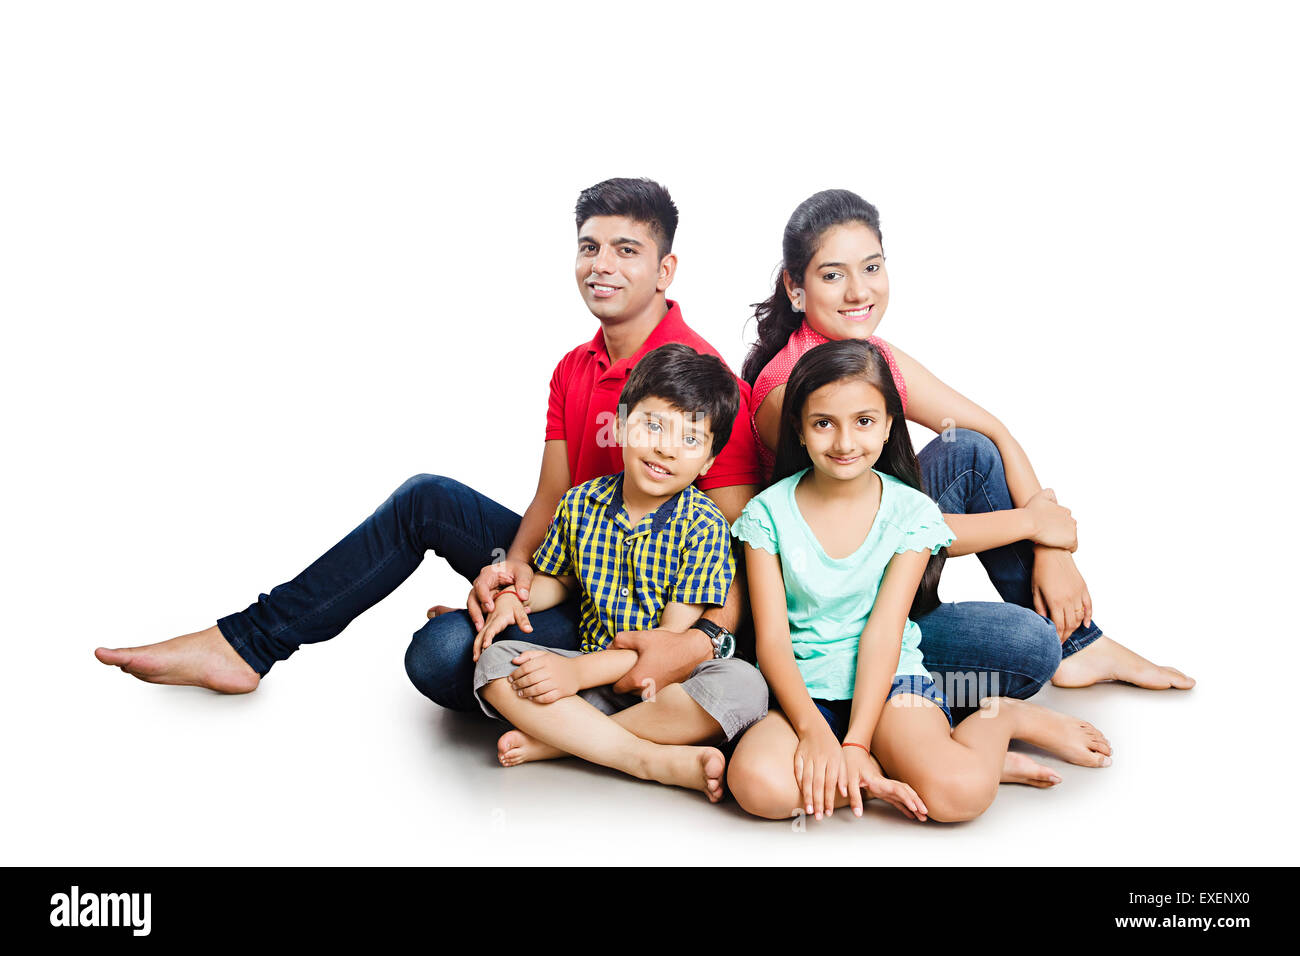 Indian i genitori con bambini di schiena seduta pongono Foto Stock